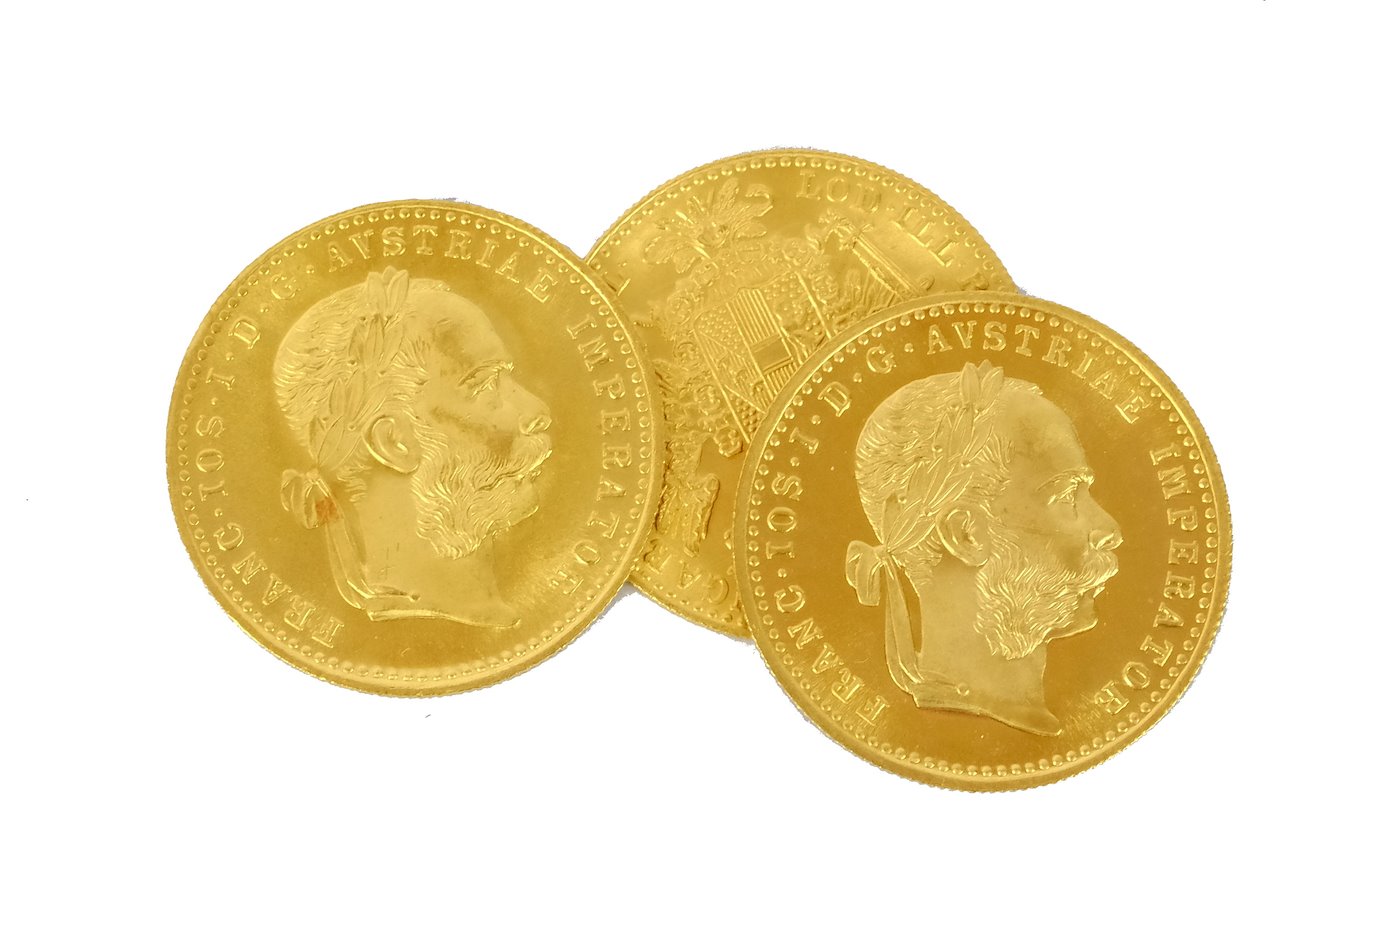 .. - Rakousko Uhersko zlatý 1 dukát 1915 pokračující ražba !!! 3 KUSY!!!, zlato 986/1000, hrubá hmotnost 3,491g